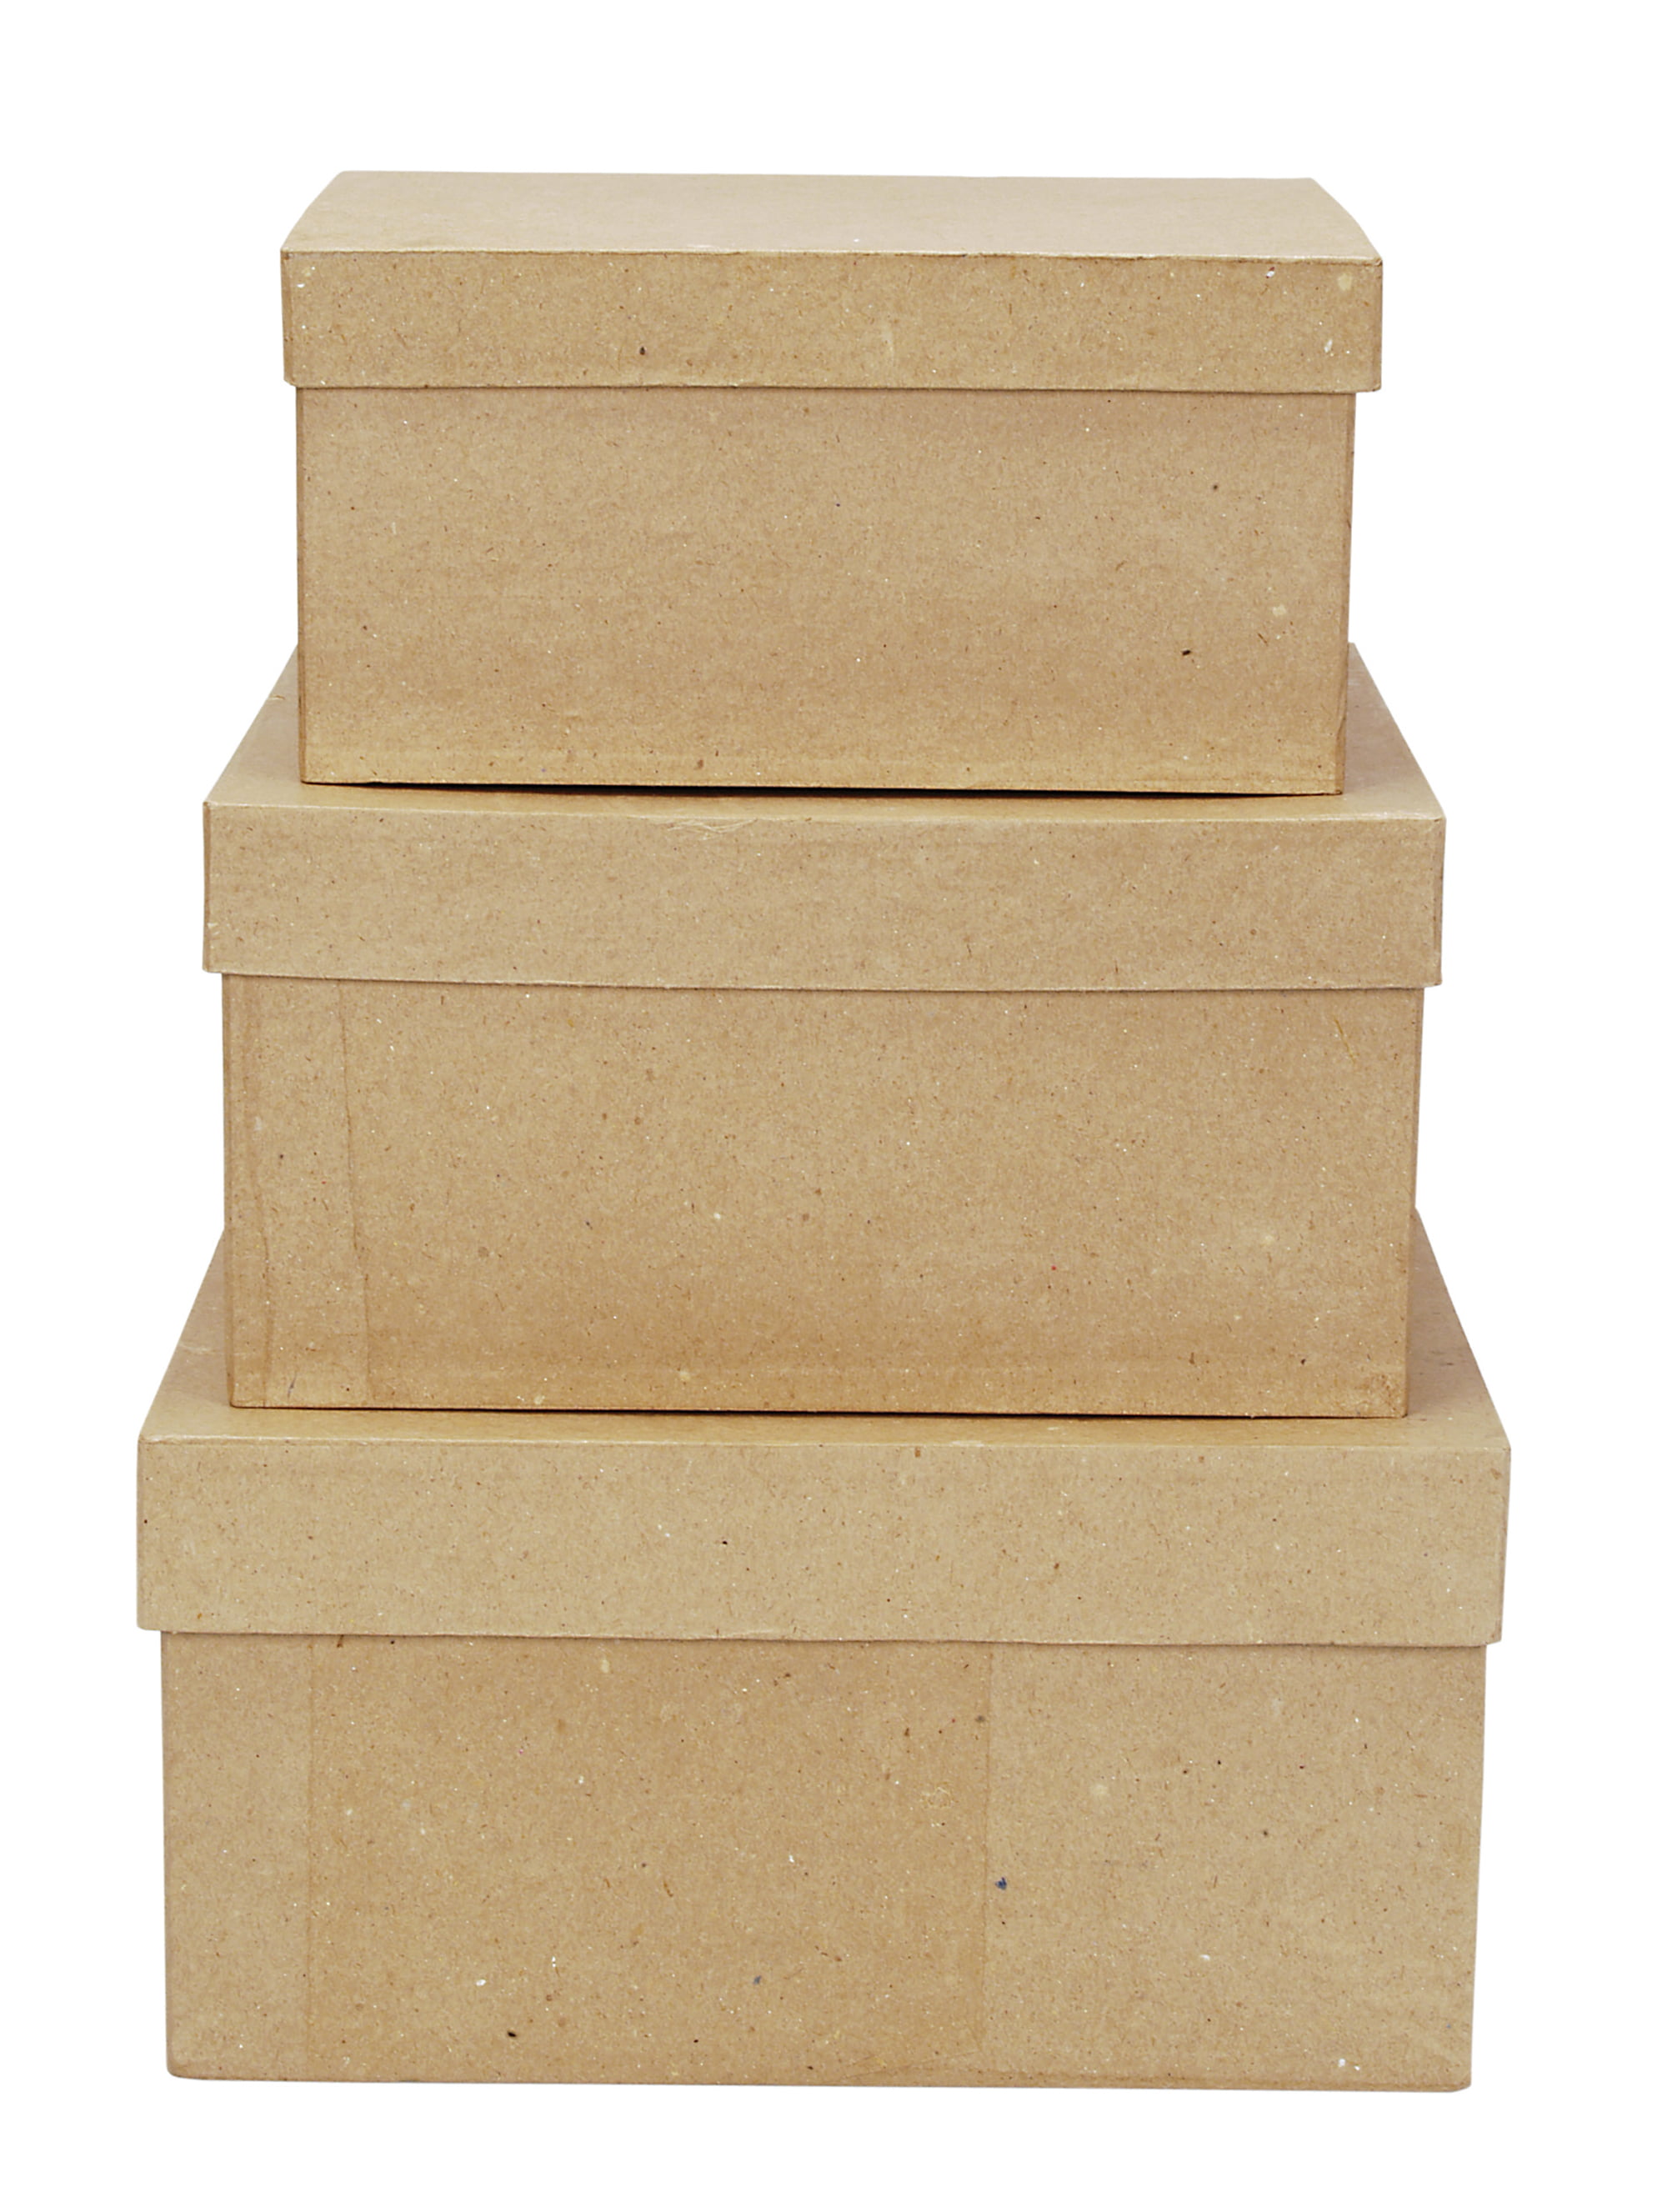 Paper Mache Book Box - 9-3/4 x 6-1/2 x 2-1/4 in : : Home